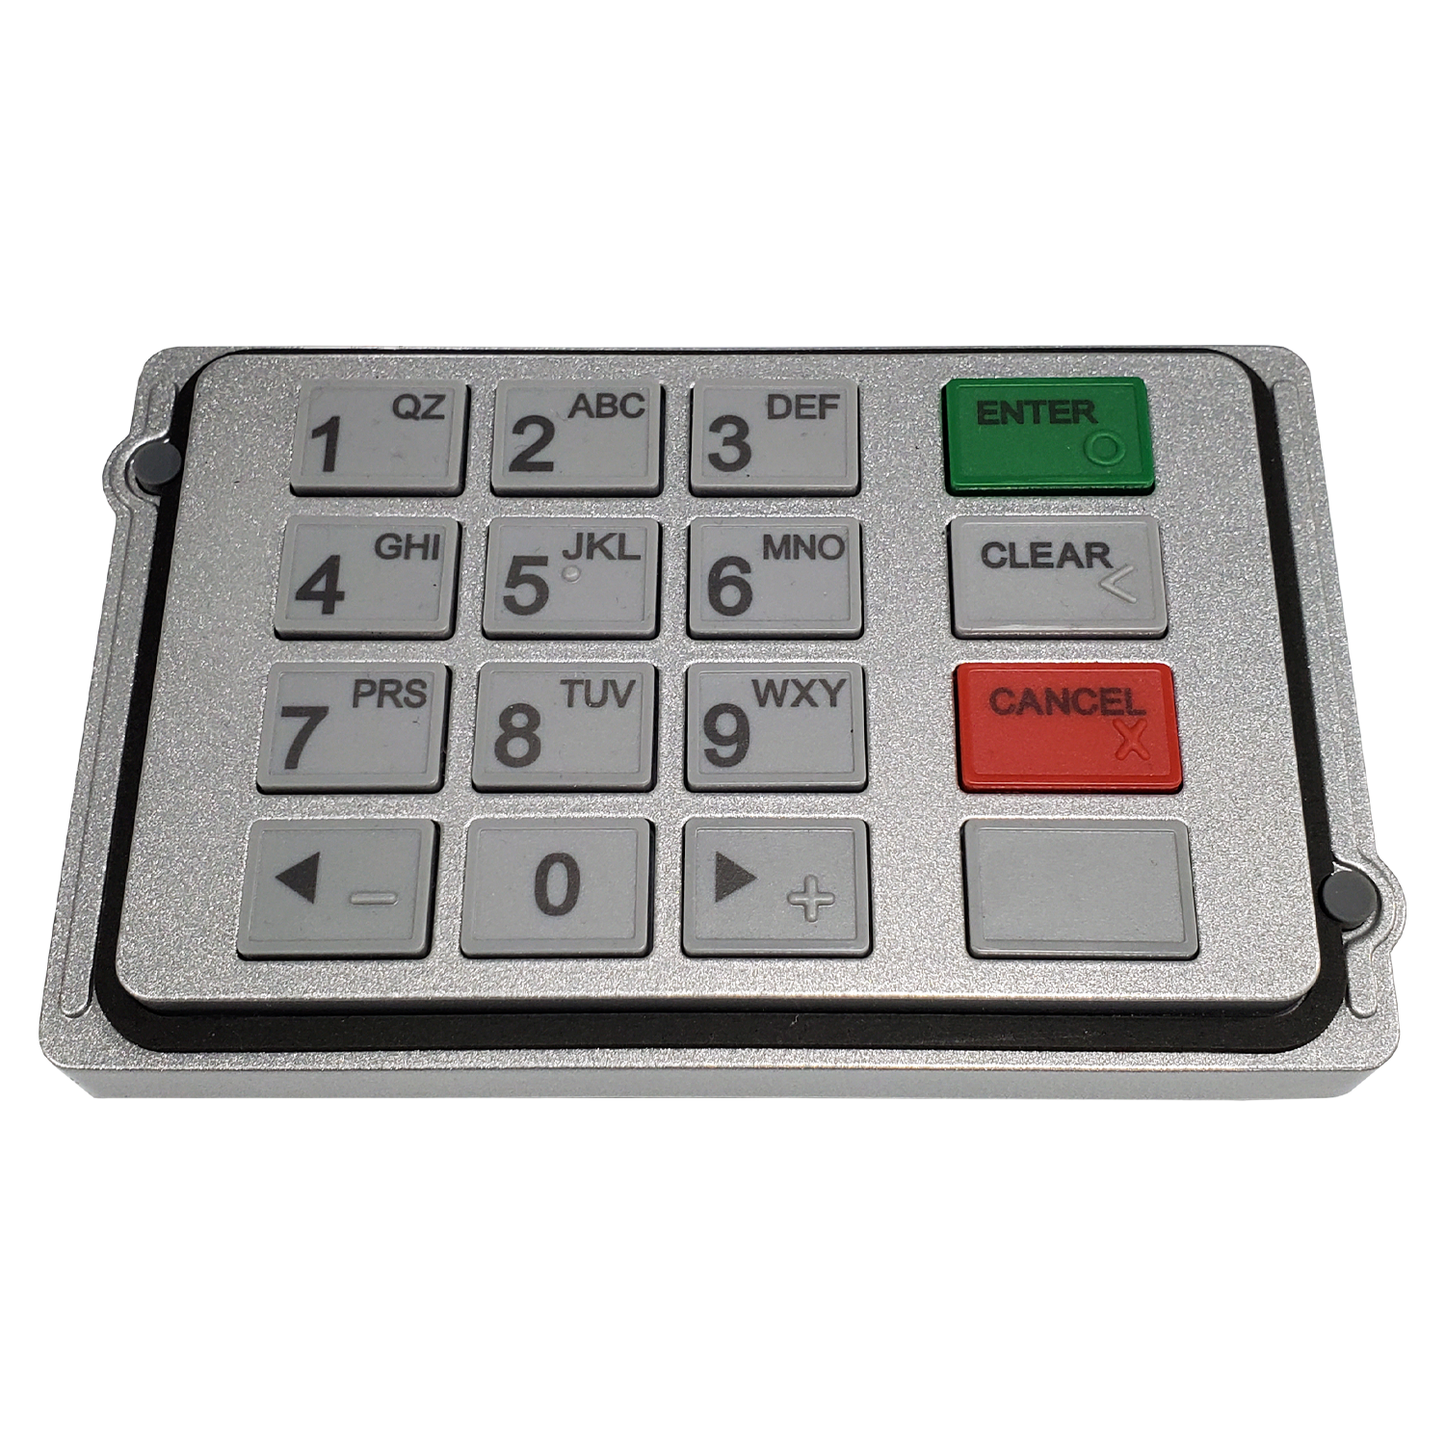 Hyosung ATM Keypad